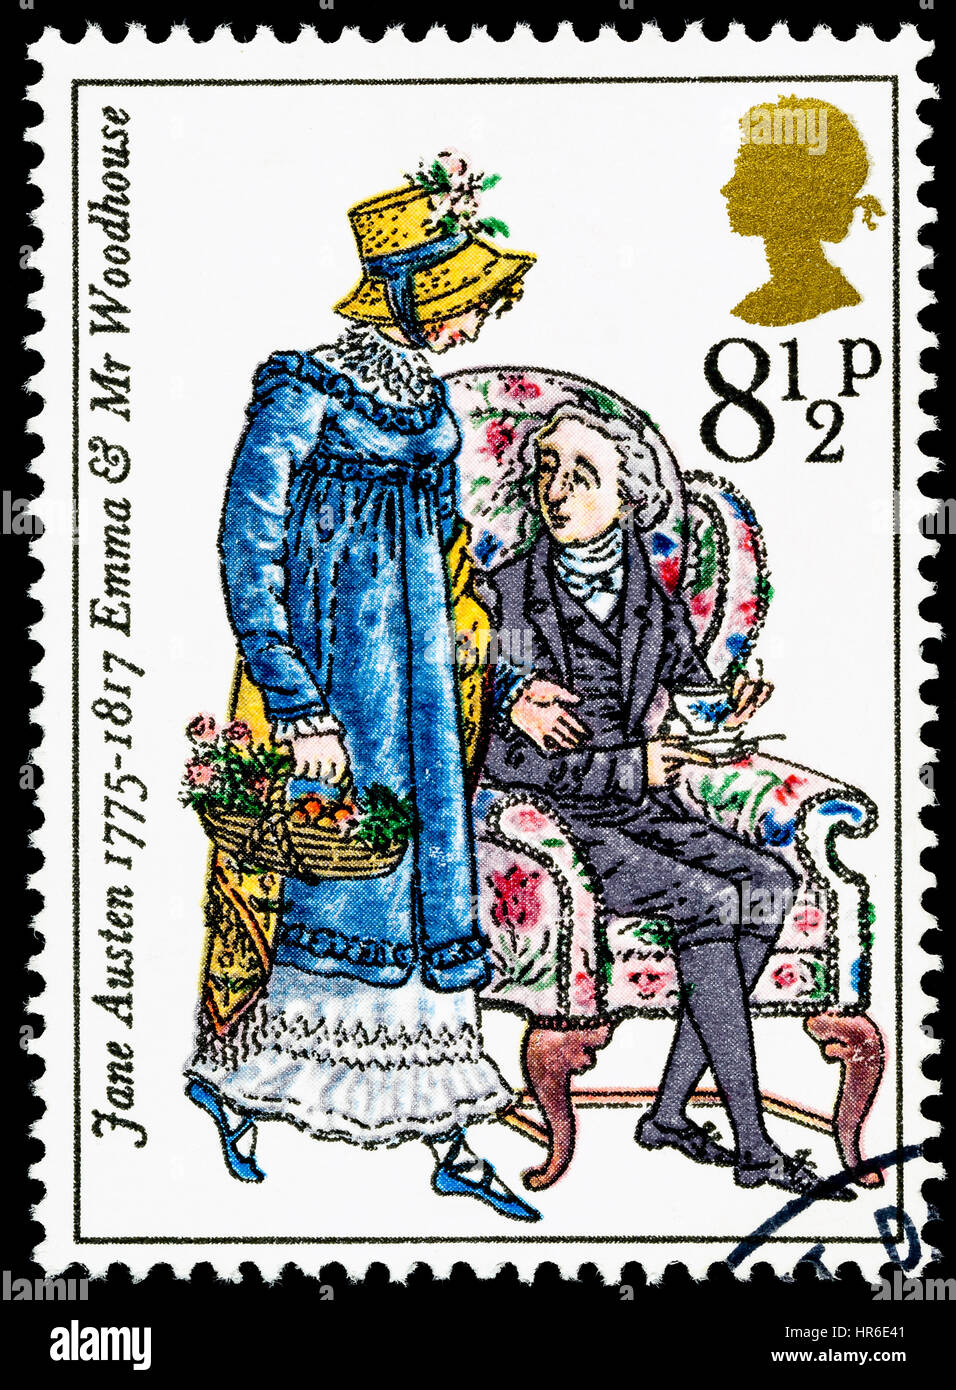 Vereinigtes Königreich - ca. 1975: verwendete Briefmarke gedruckt in Großbritannien anlässlich der Zweihundertjahrfeier der Schriftstellerin Jane Austen Stockfoto